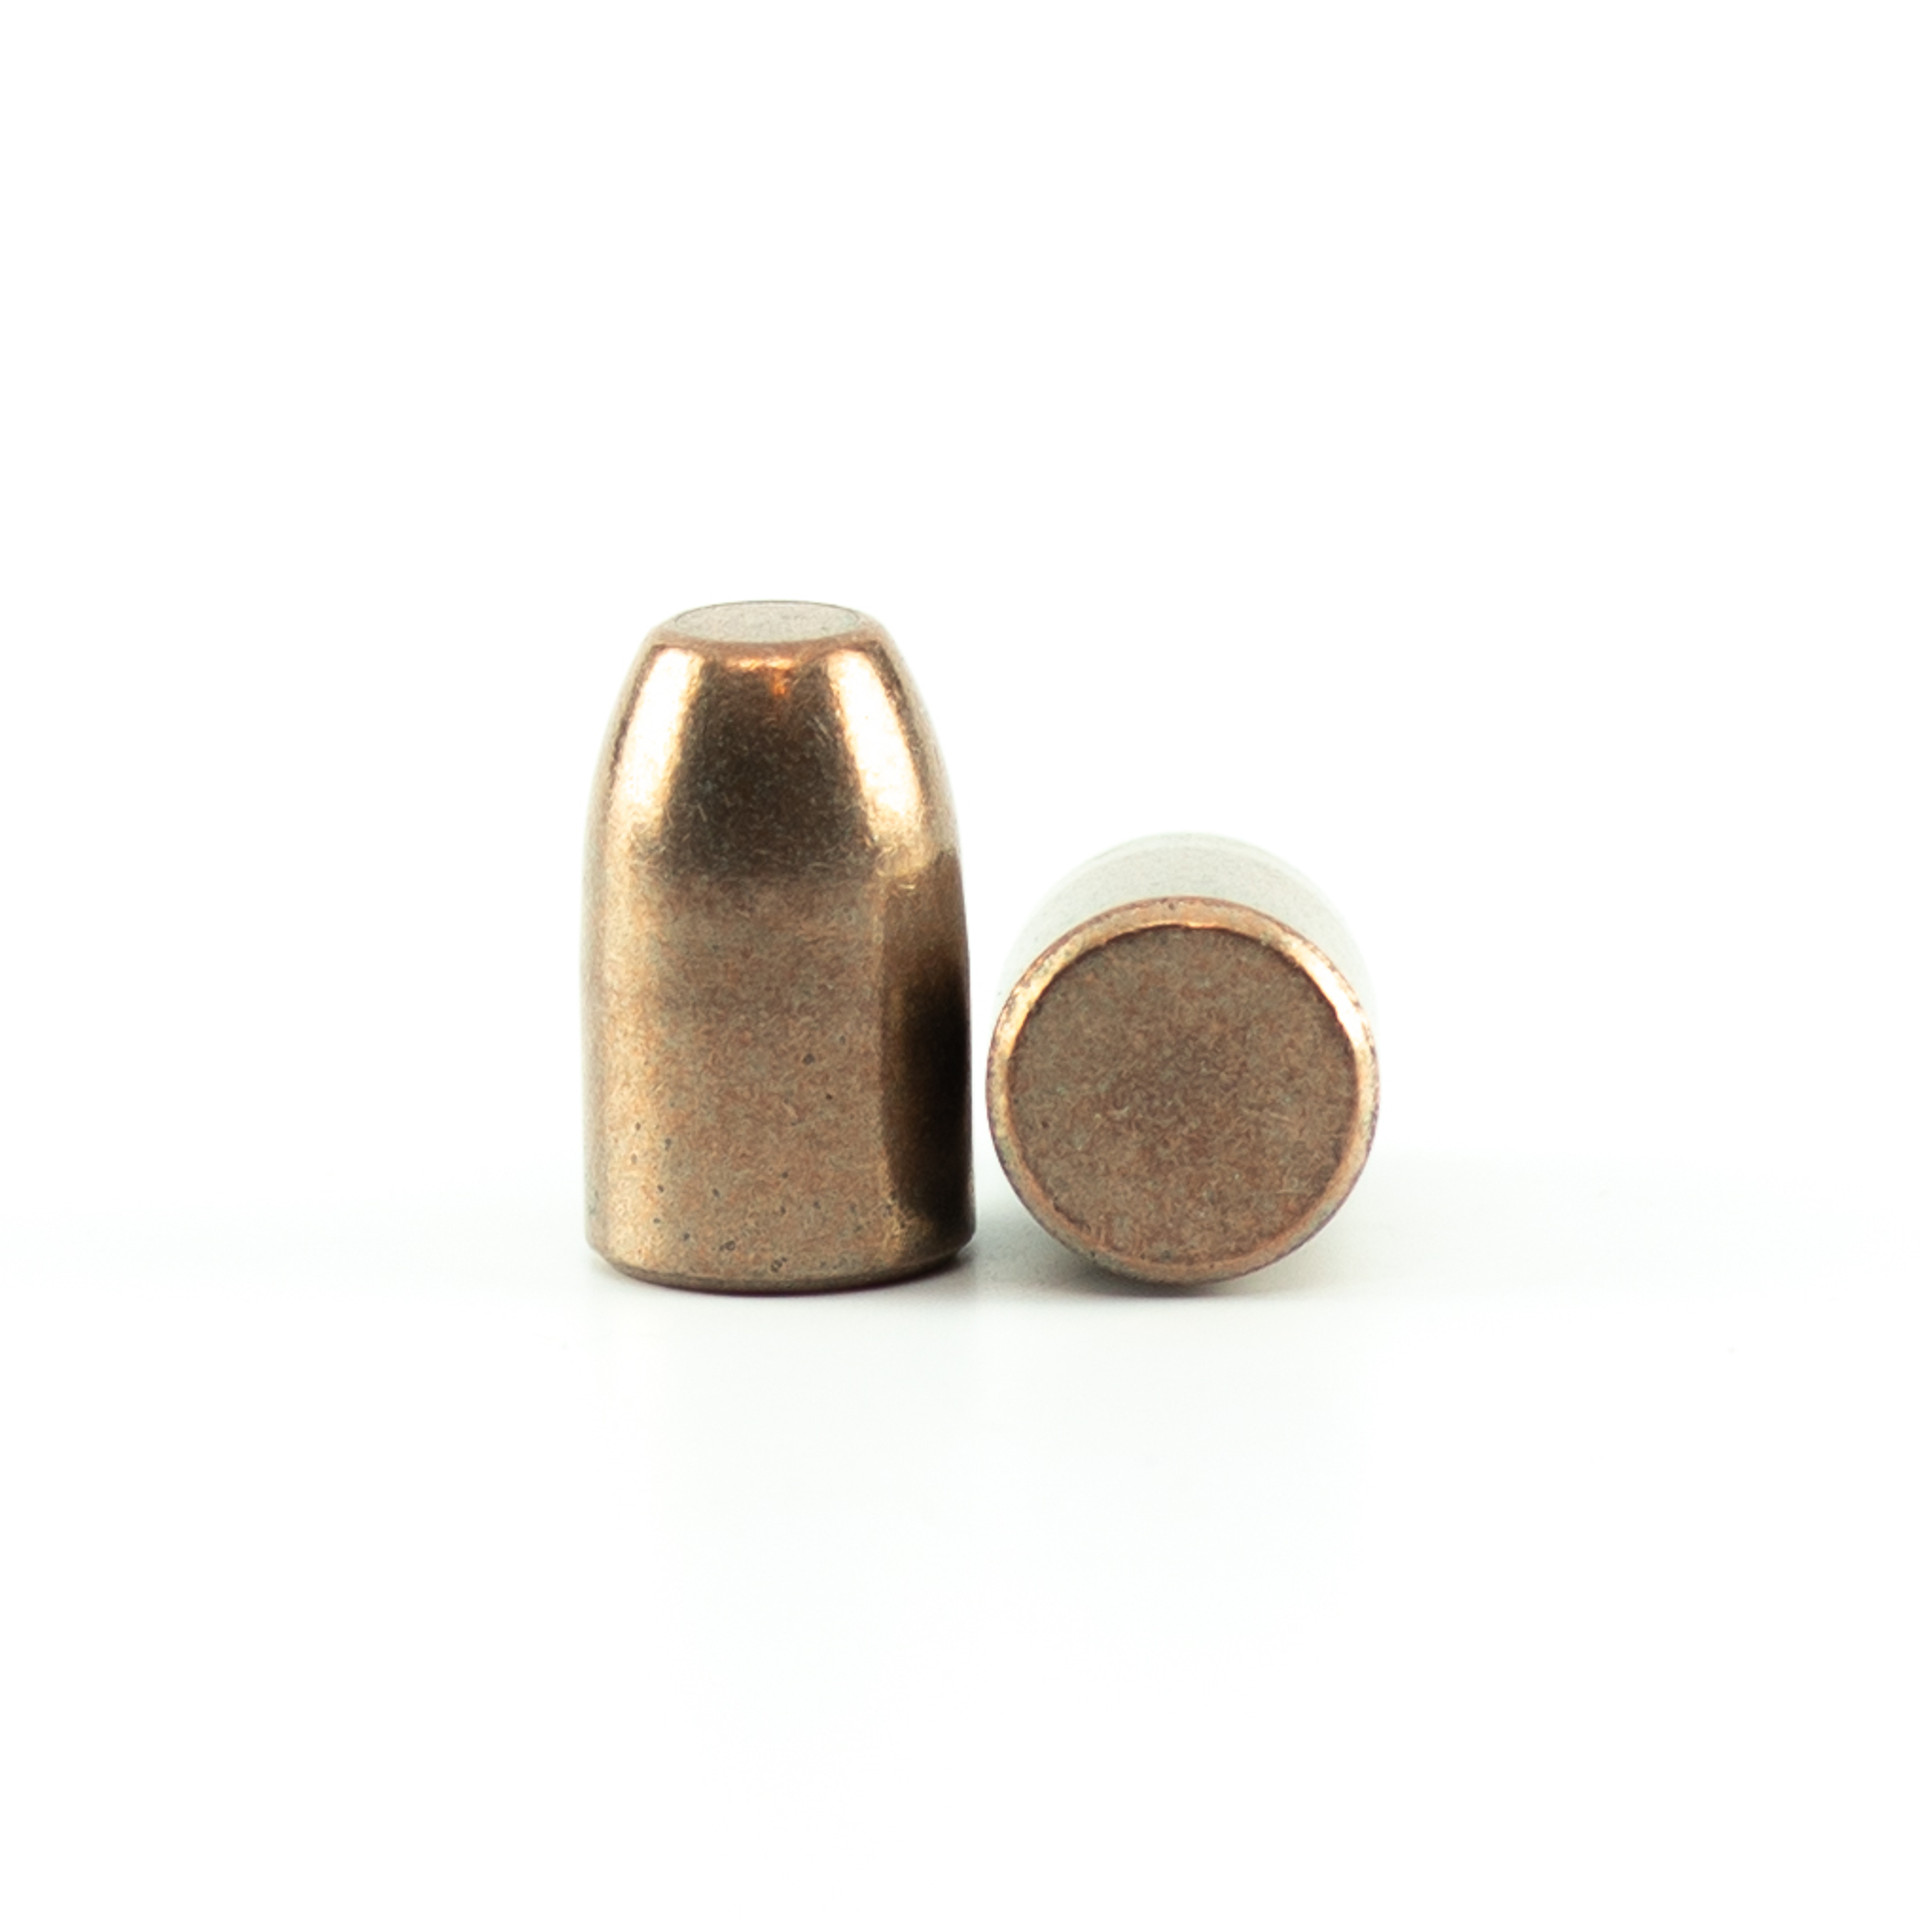 Sinterfire 40 caliber 135 grain frangible | Reloading bullets